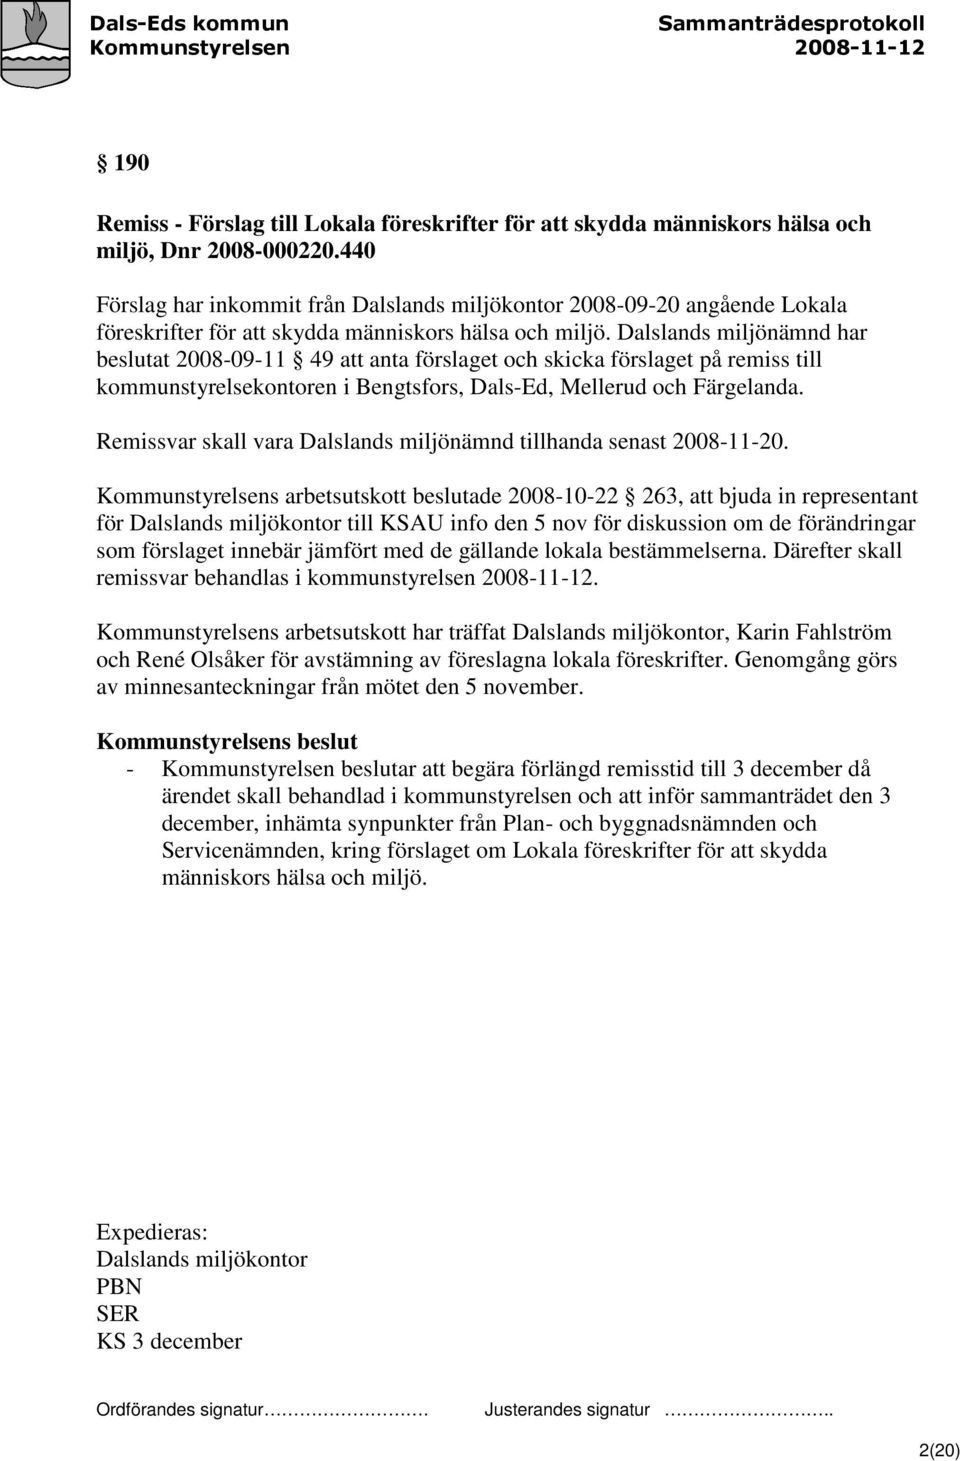 Dalslands miljönämnd har beslutat 2008-09-11 49 att anta förslaget och skicka förslaget på remiss till kommunstyrelsekontoren i Bengtsfors, Dals-Ed, Mellerud och Färgelanda.